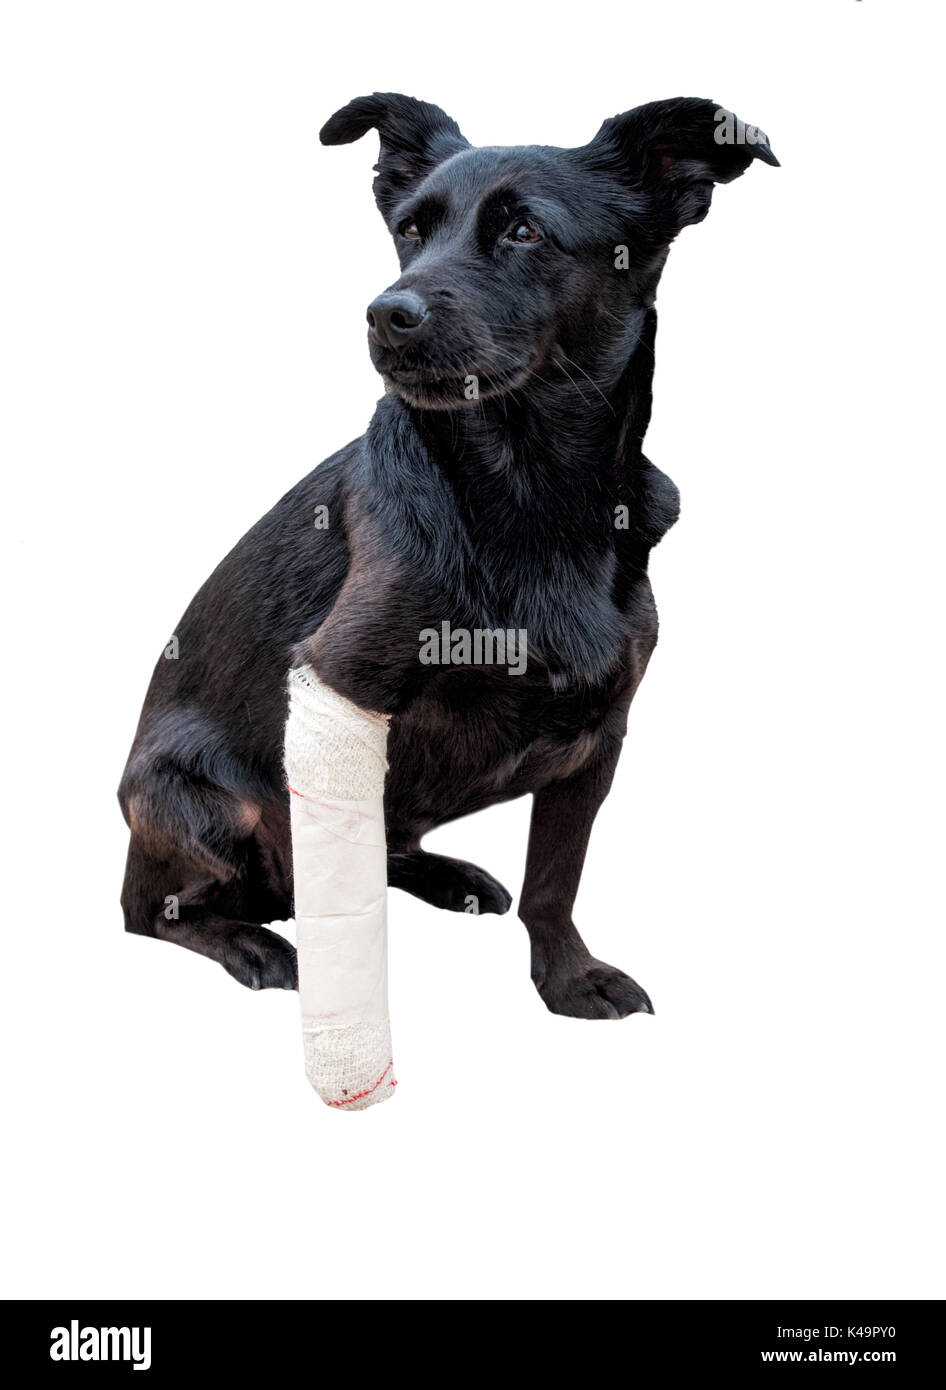 Schwarzer Hund, S Bein ist, in einen Verband gewickelt. Gebrochene Pfote,  schmerzhafte Stare Stockfotografie - Alamy